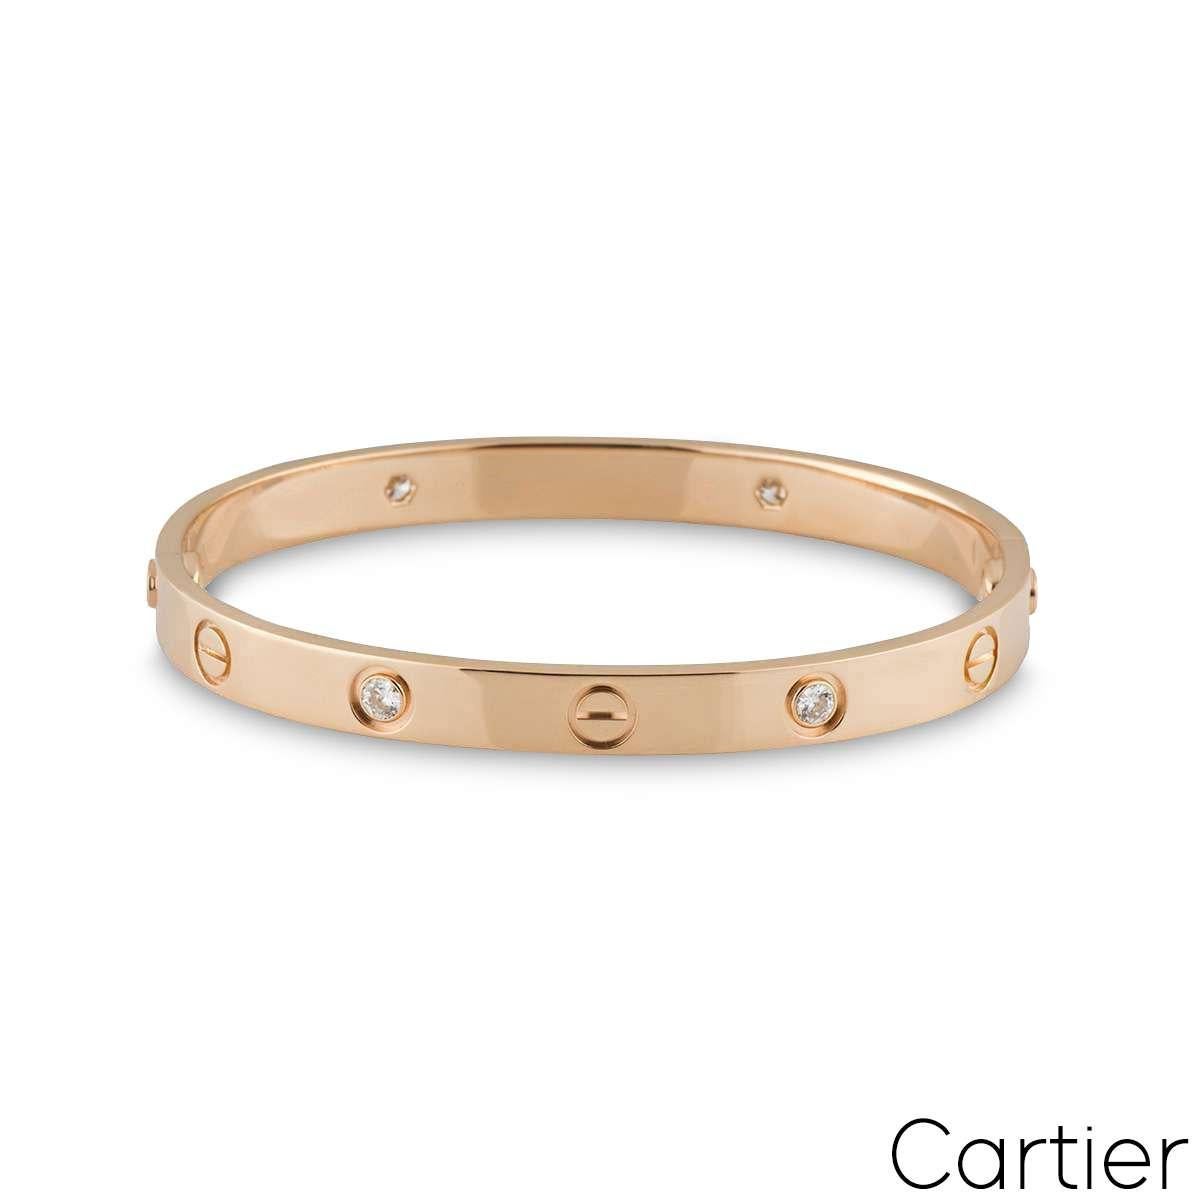 Un bracelet Cartier en or rose 18 carats et demi diamant de la collection Love. Le motif iconique de la vis alterne avec 4 diamants ronds de taille brillant sur le bord extérieur du bracelet, pour un total de 0,42ct. Le bracelet, de taille 19, est